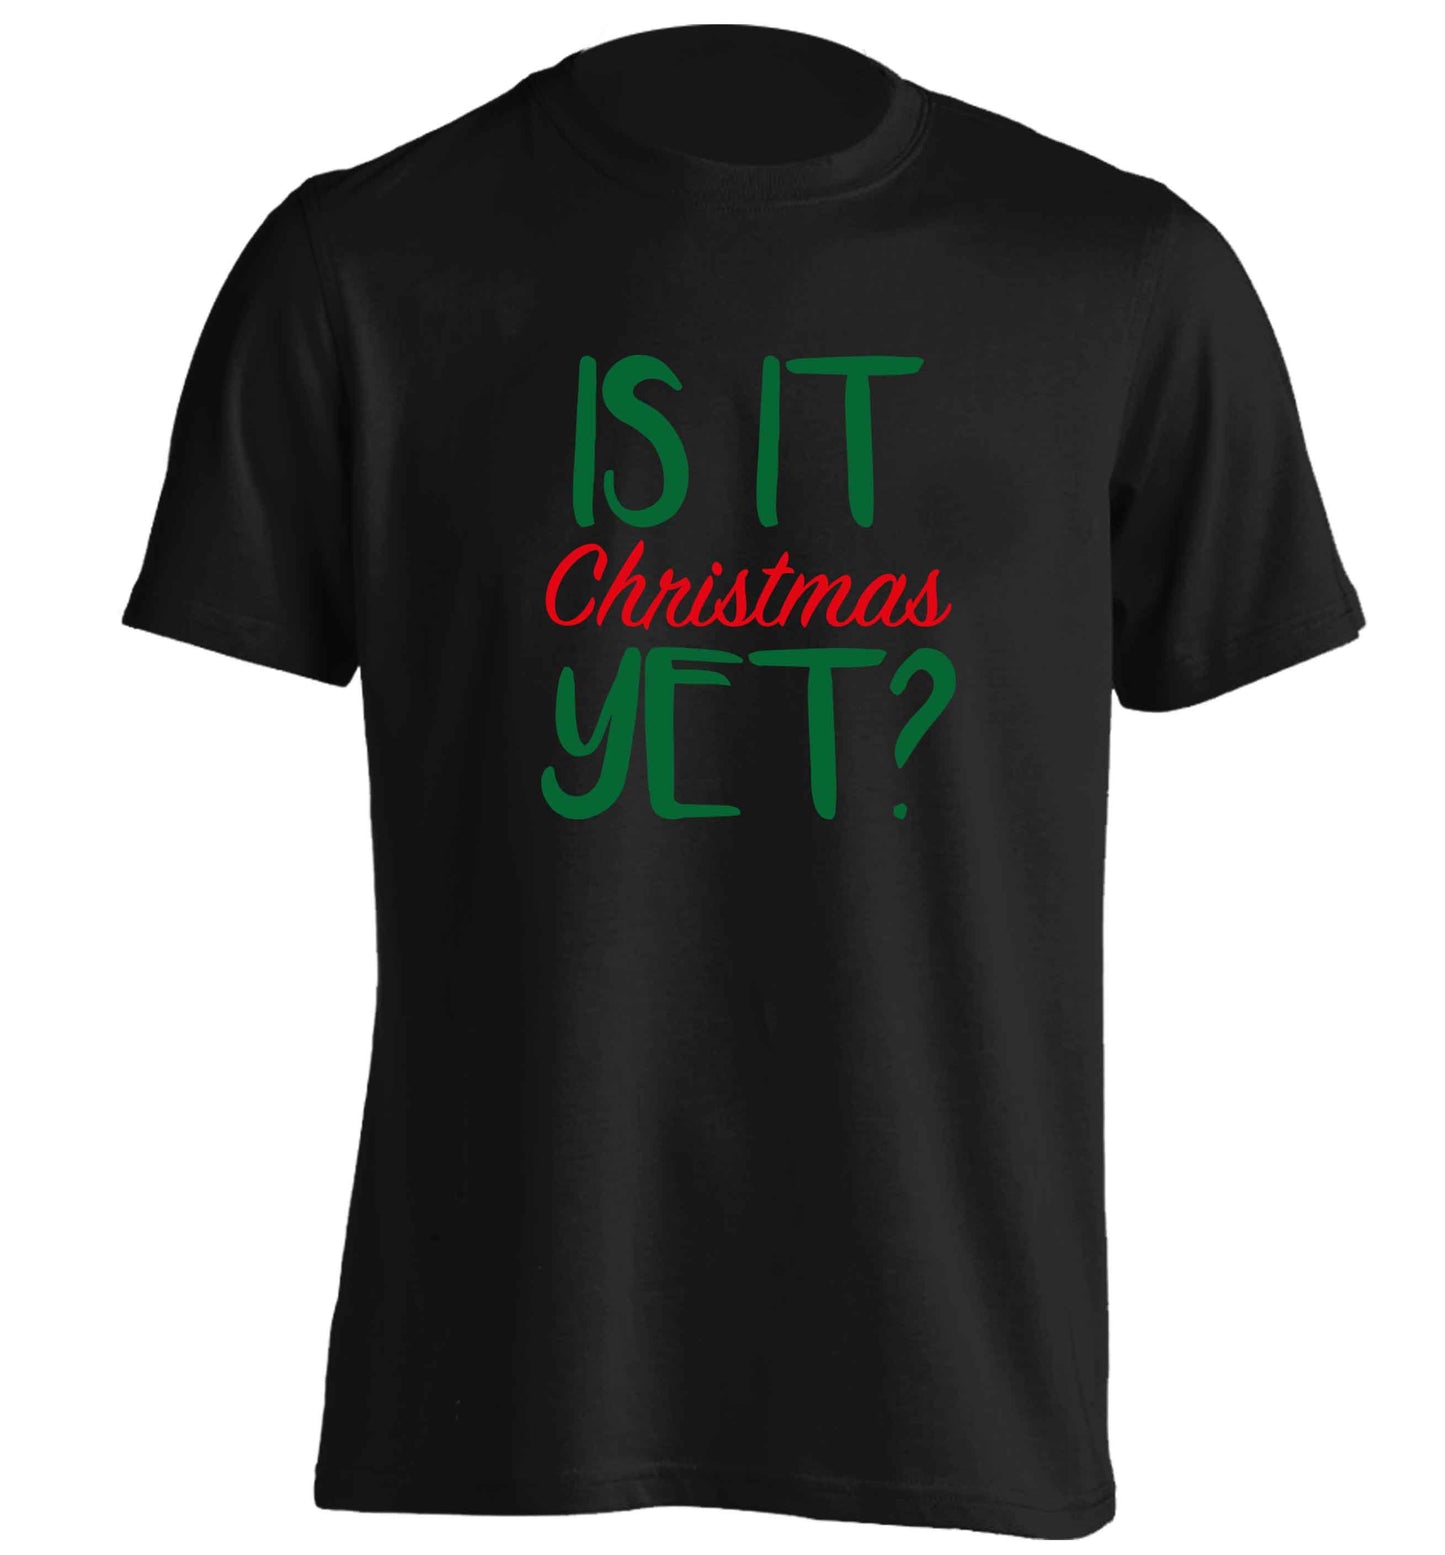 Is it Christmas yet? adults unisex black Tshirt 2XL